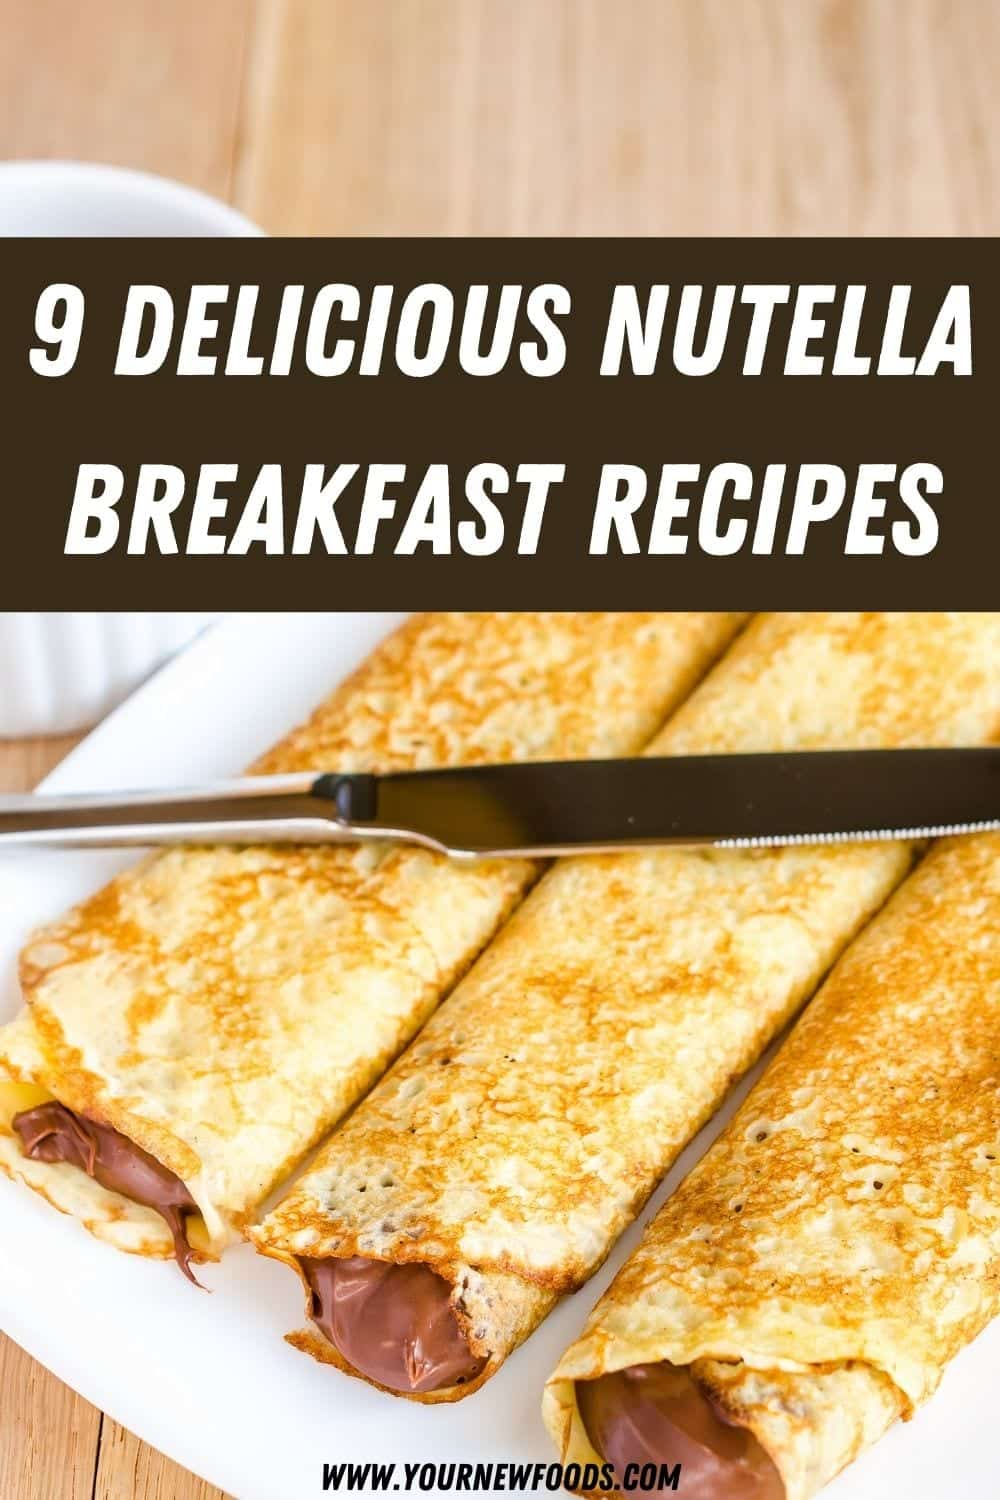 Nutella breakfast recipes